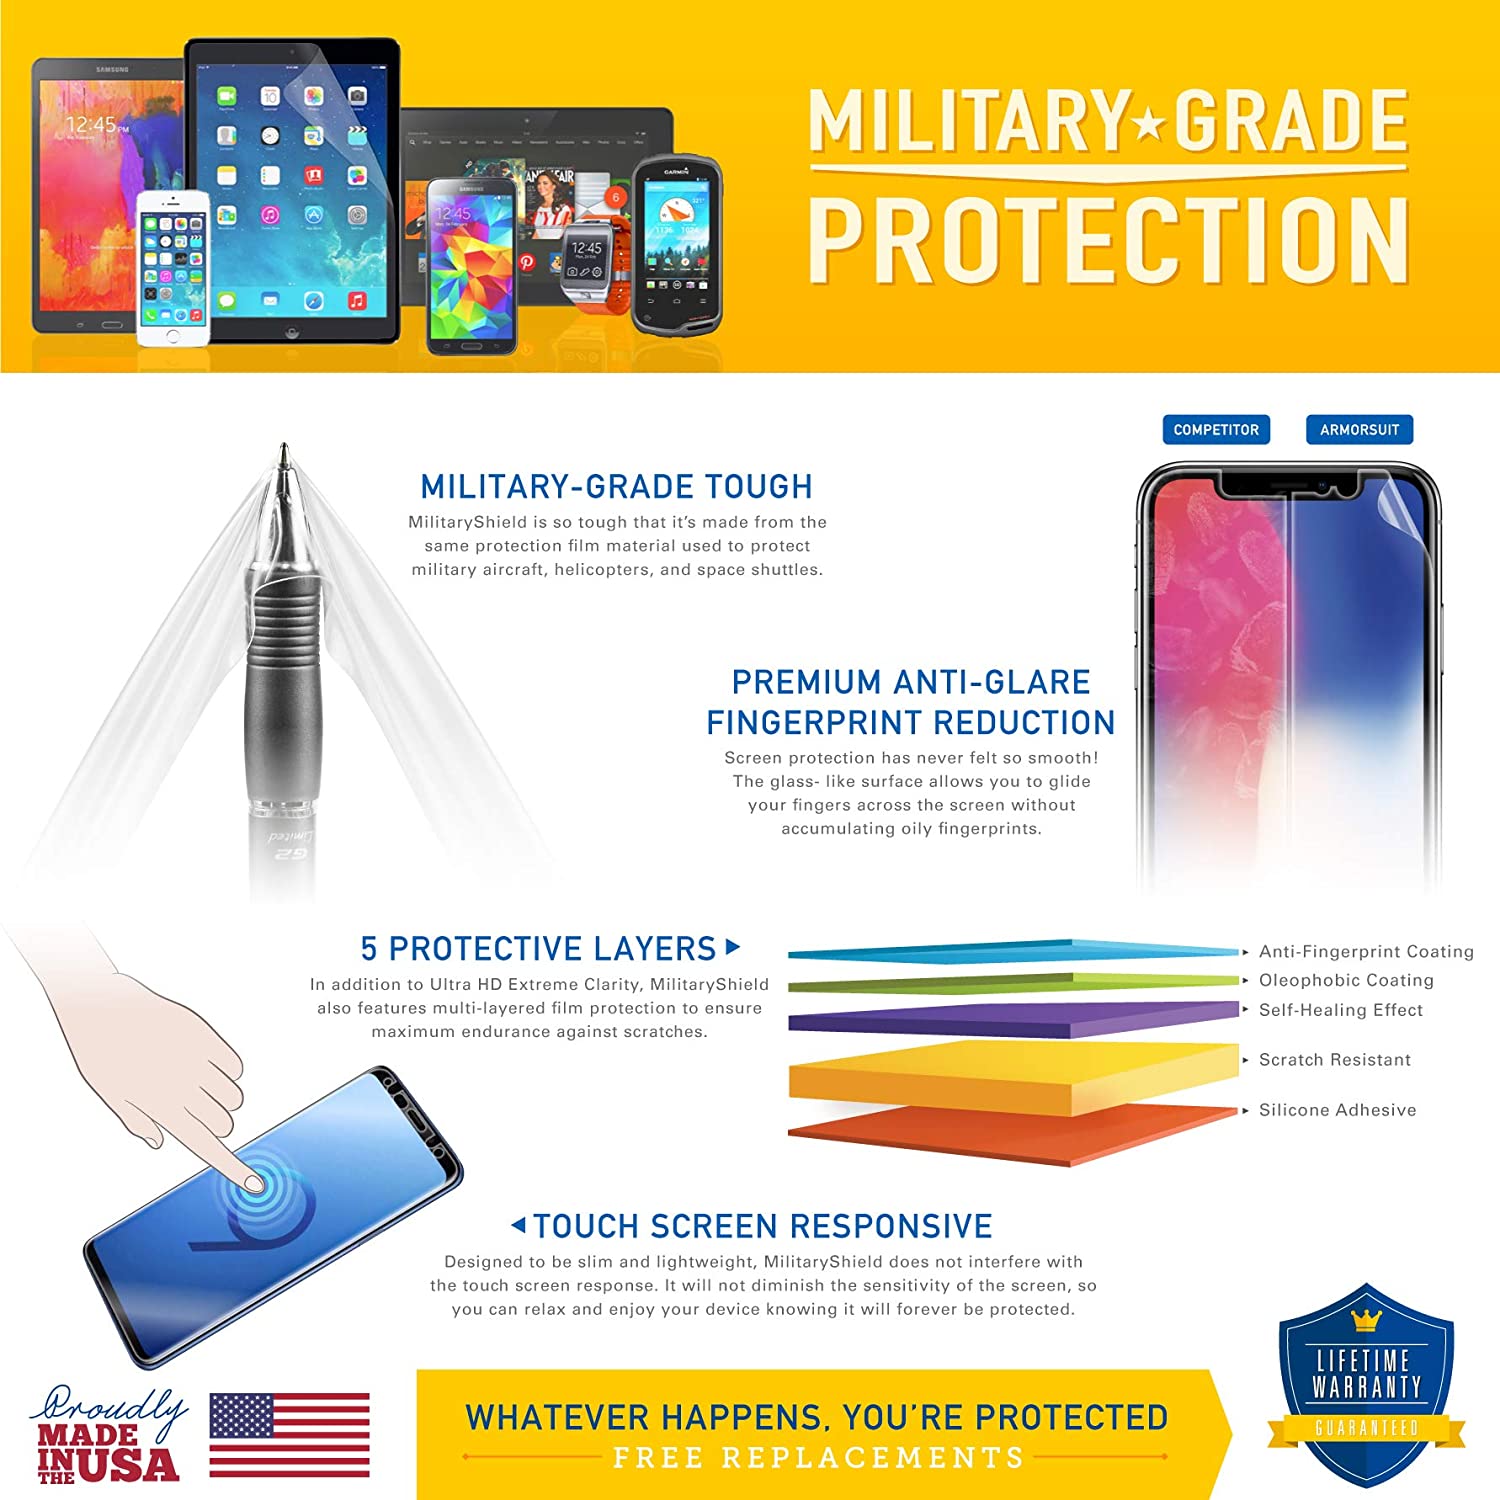 Samsung Galaxy Tab 7.0 Plus Full Body Skin Protector